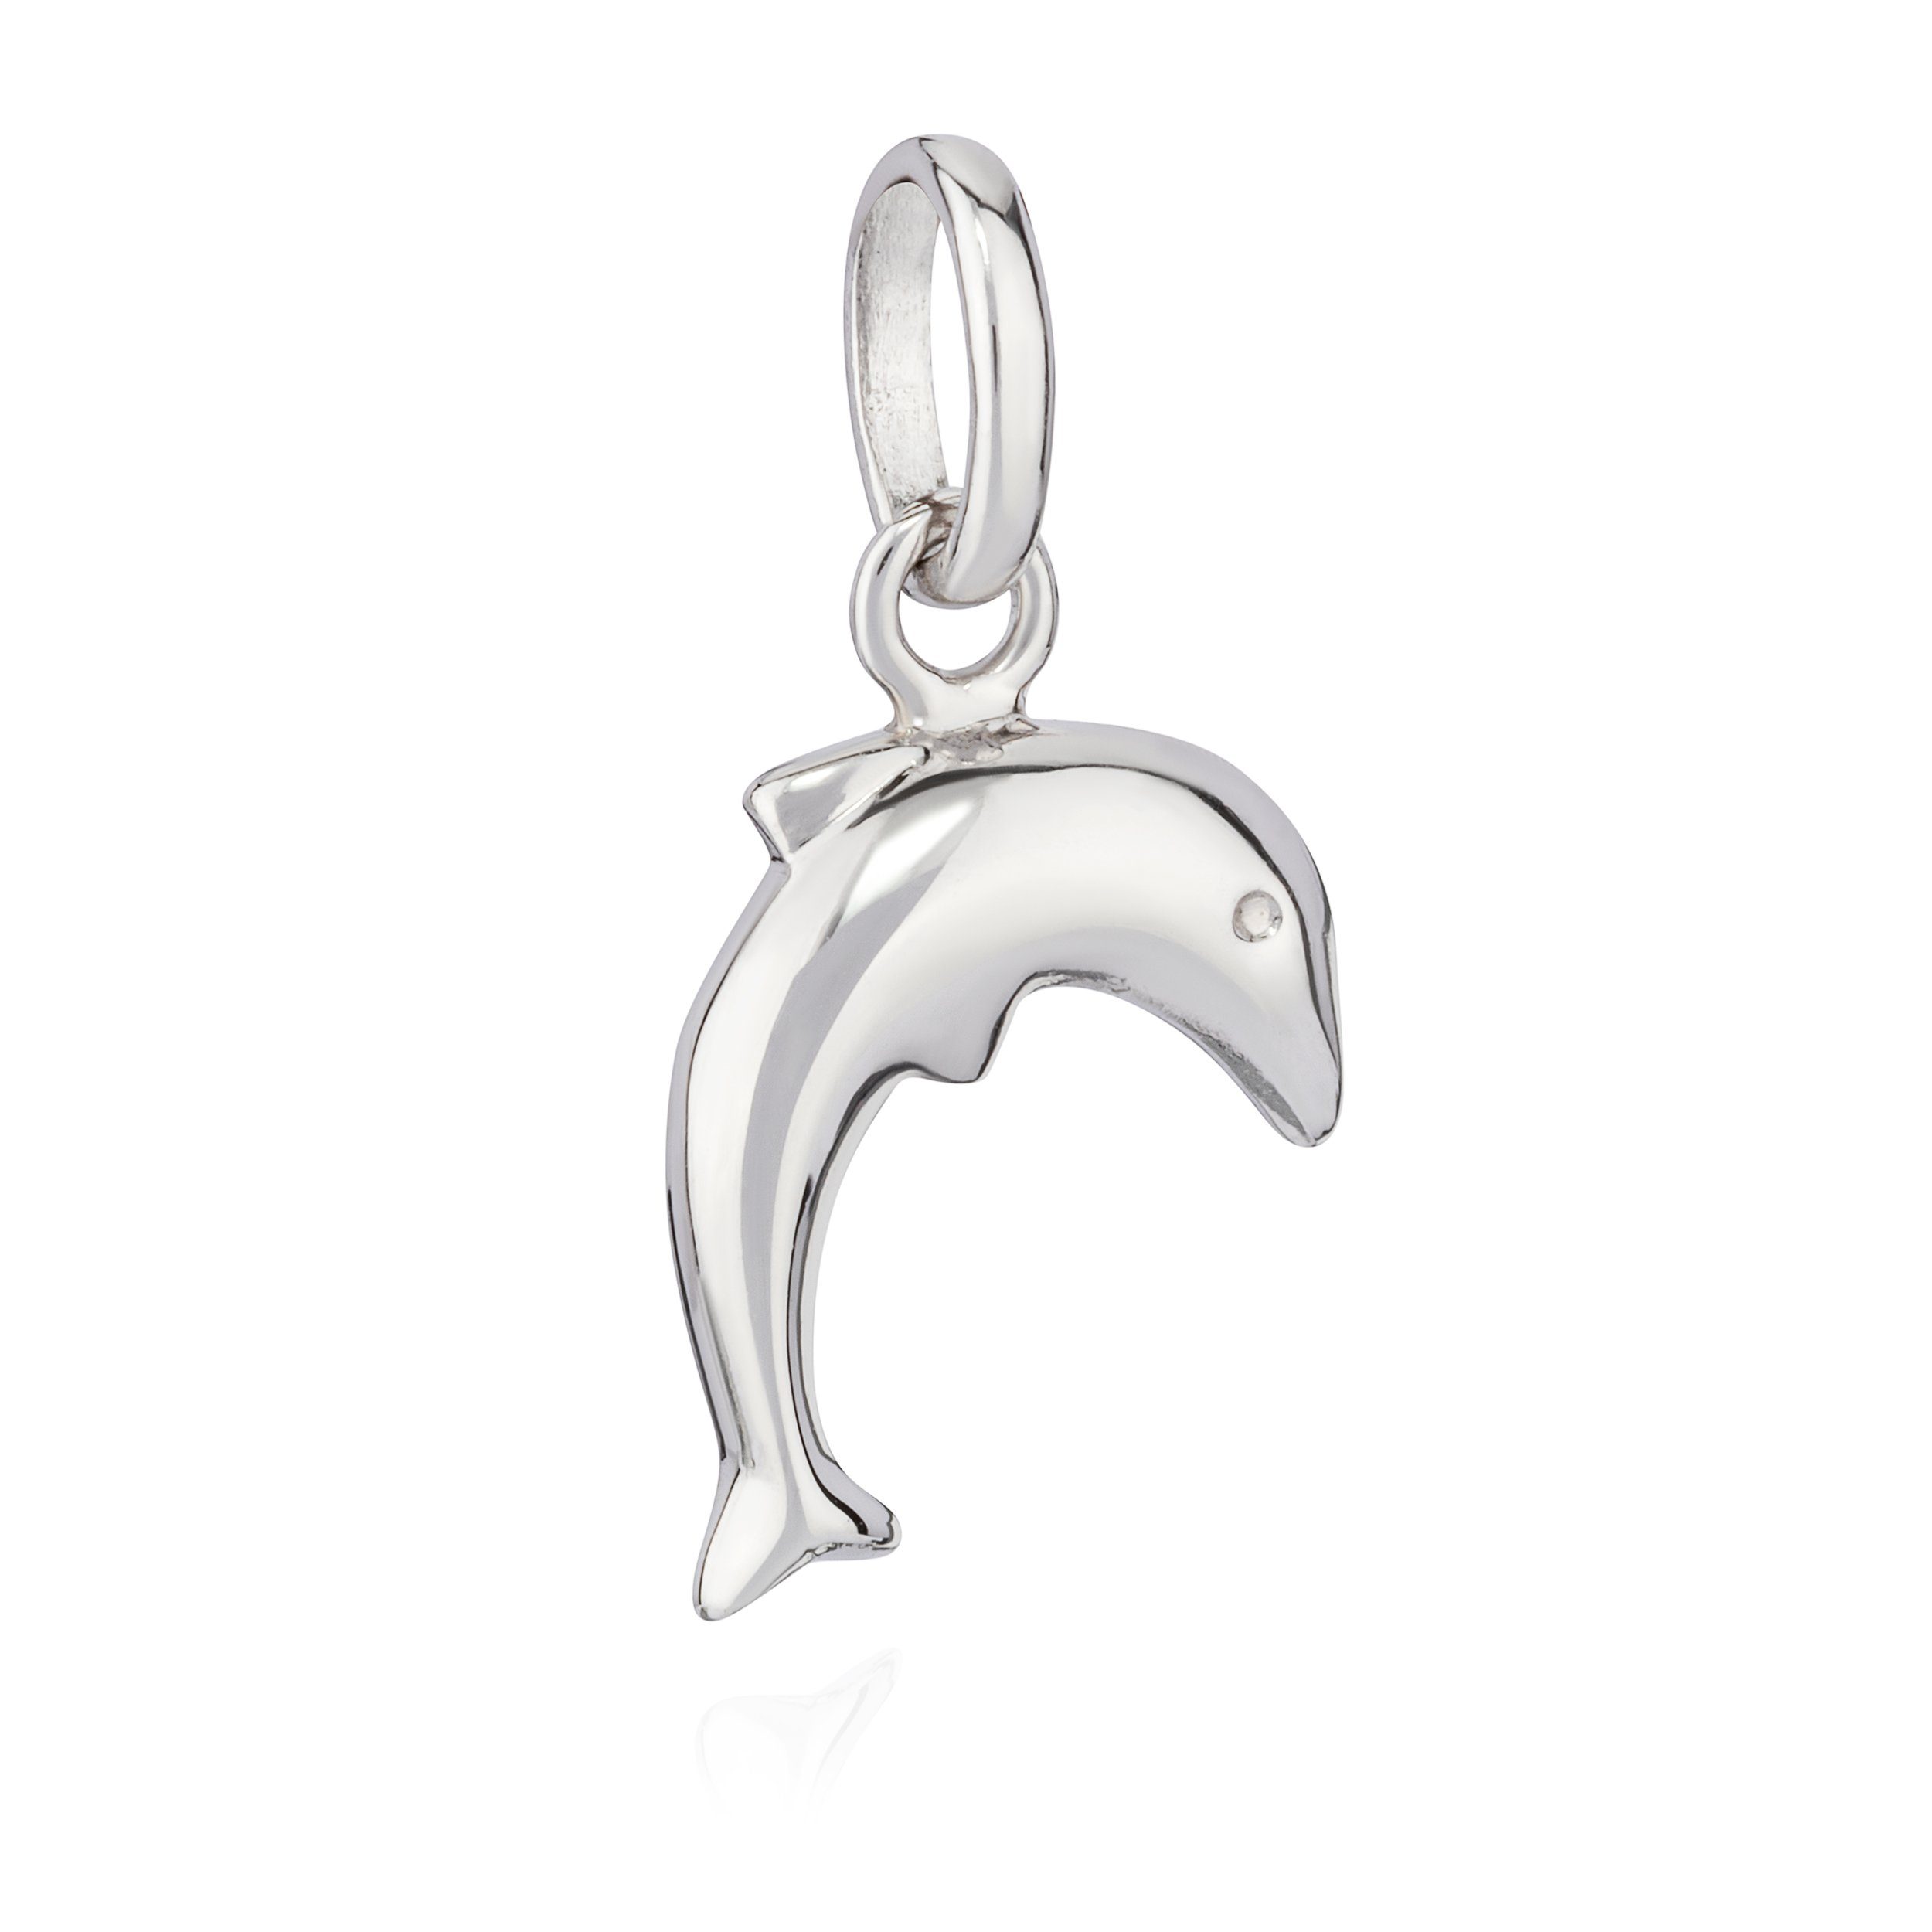 NKlaus Kettenanhänger Kettenanhänger Delfin 925 Silber anlaufgeschützt g